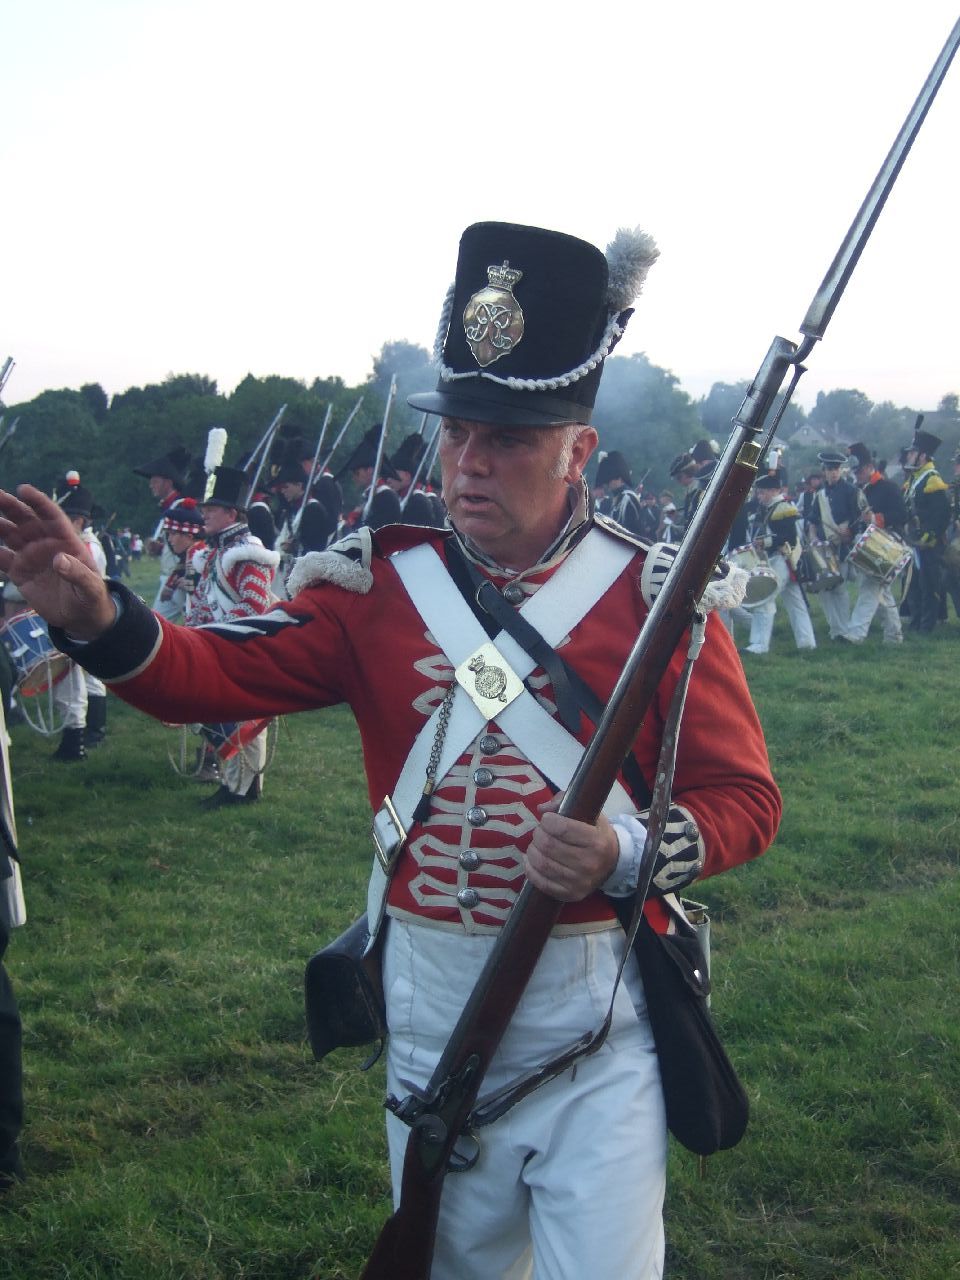 Battle of Waterloo - 1815